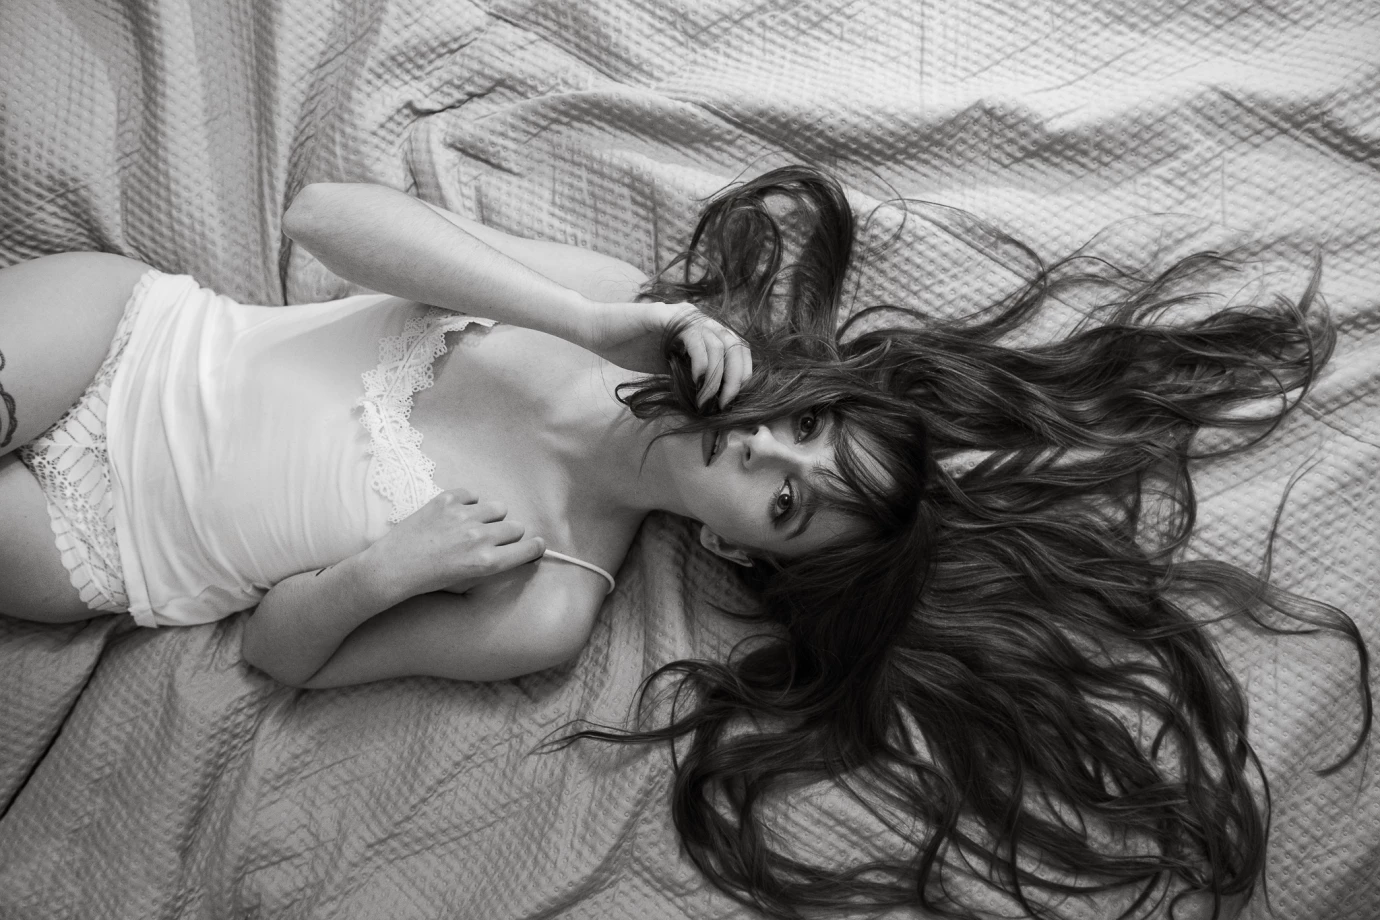 fotograf wroclaw dominika-krol-fotografia portfolio sesja kobieca sensualna boudair sexy